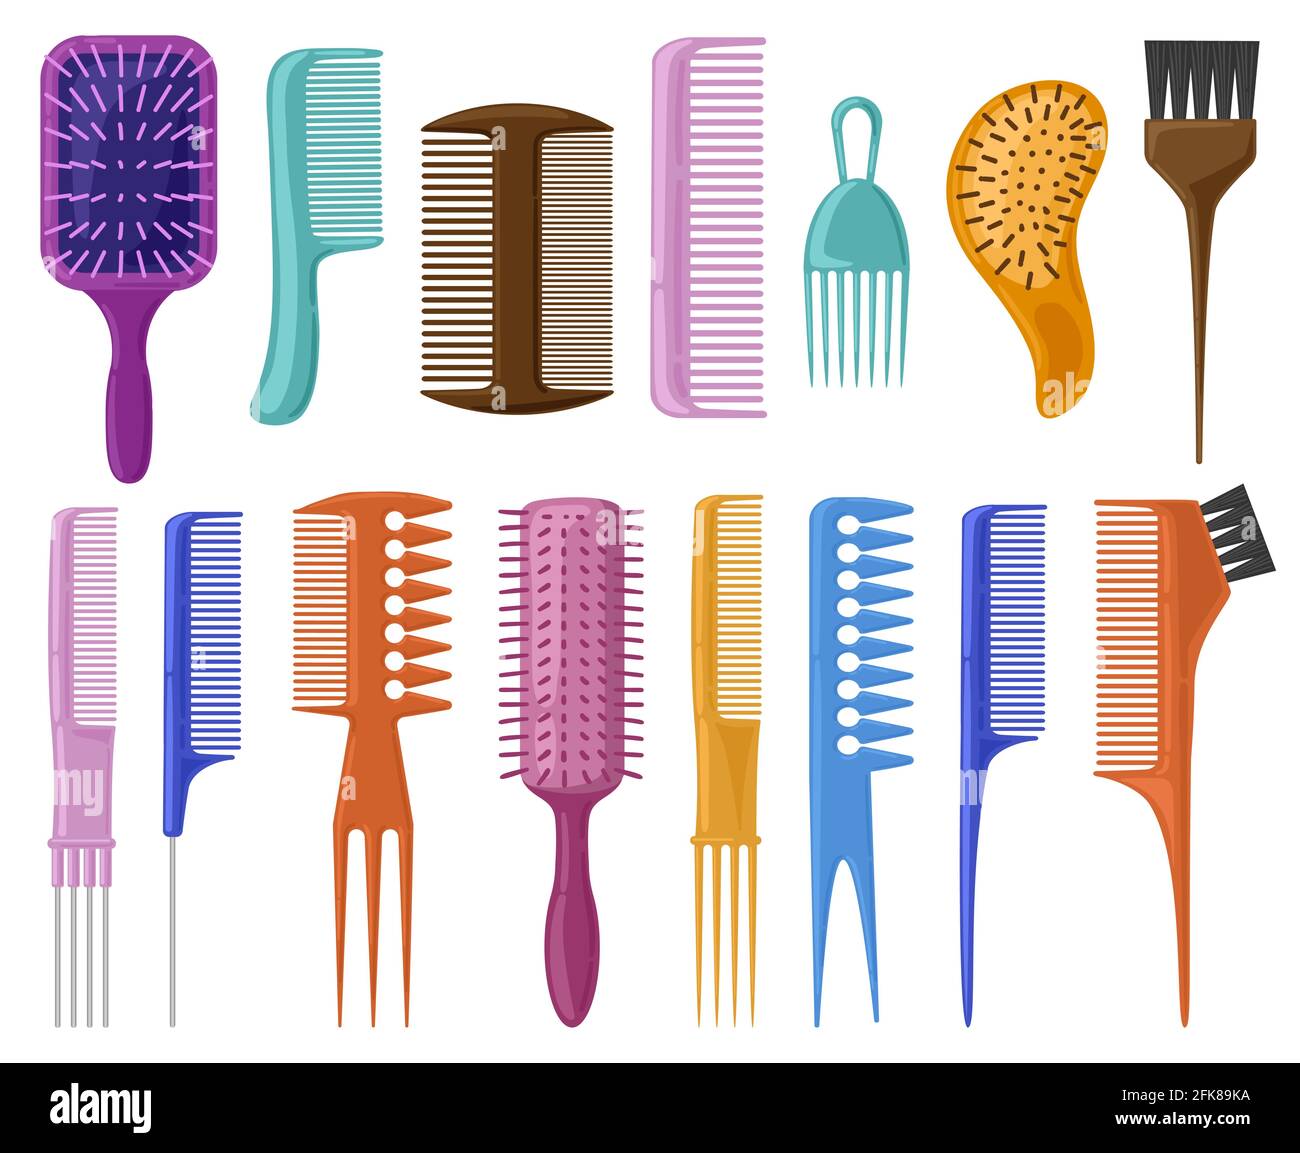 Cepillos para el cabello Imágenes vectoriales de stock - Alamy